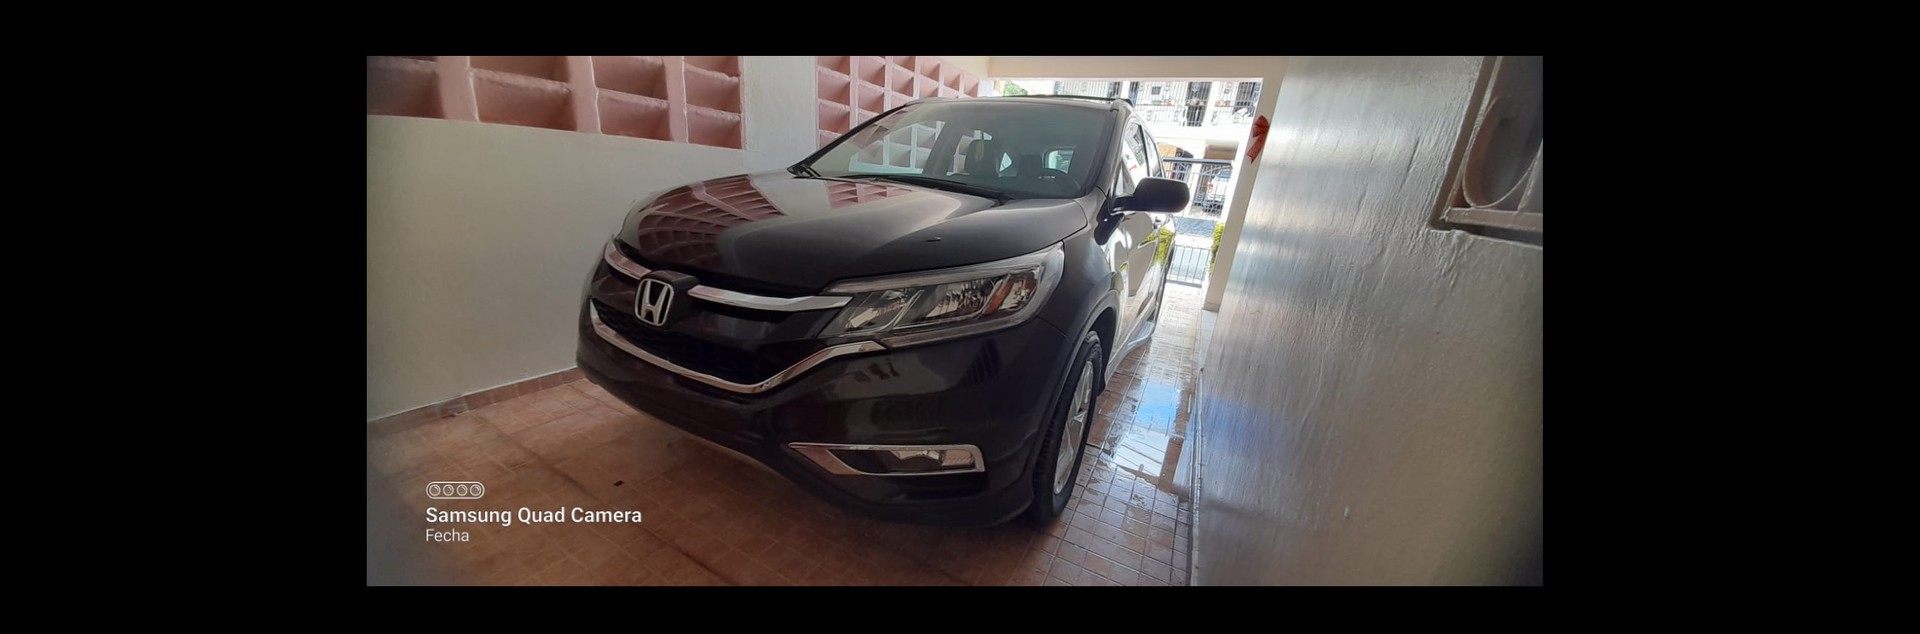 jeepetas y camionetas - Honda CRV- EXL Full 2016 